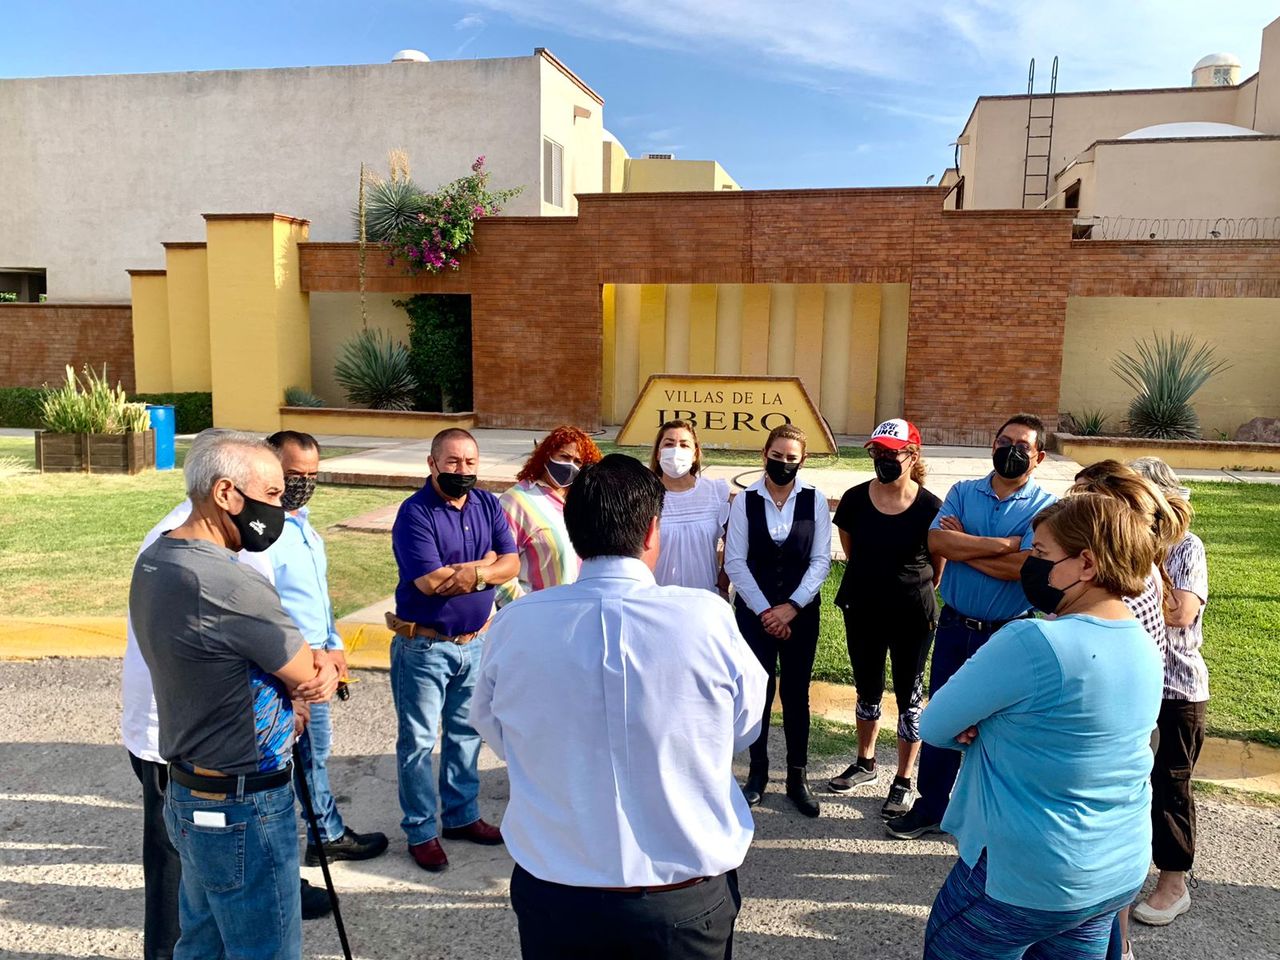 Protestan colonos de Villas de La Ibero por grave escasez de agua en Torreón